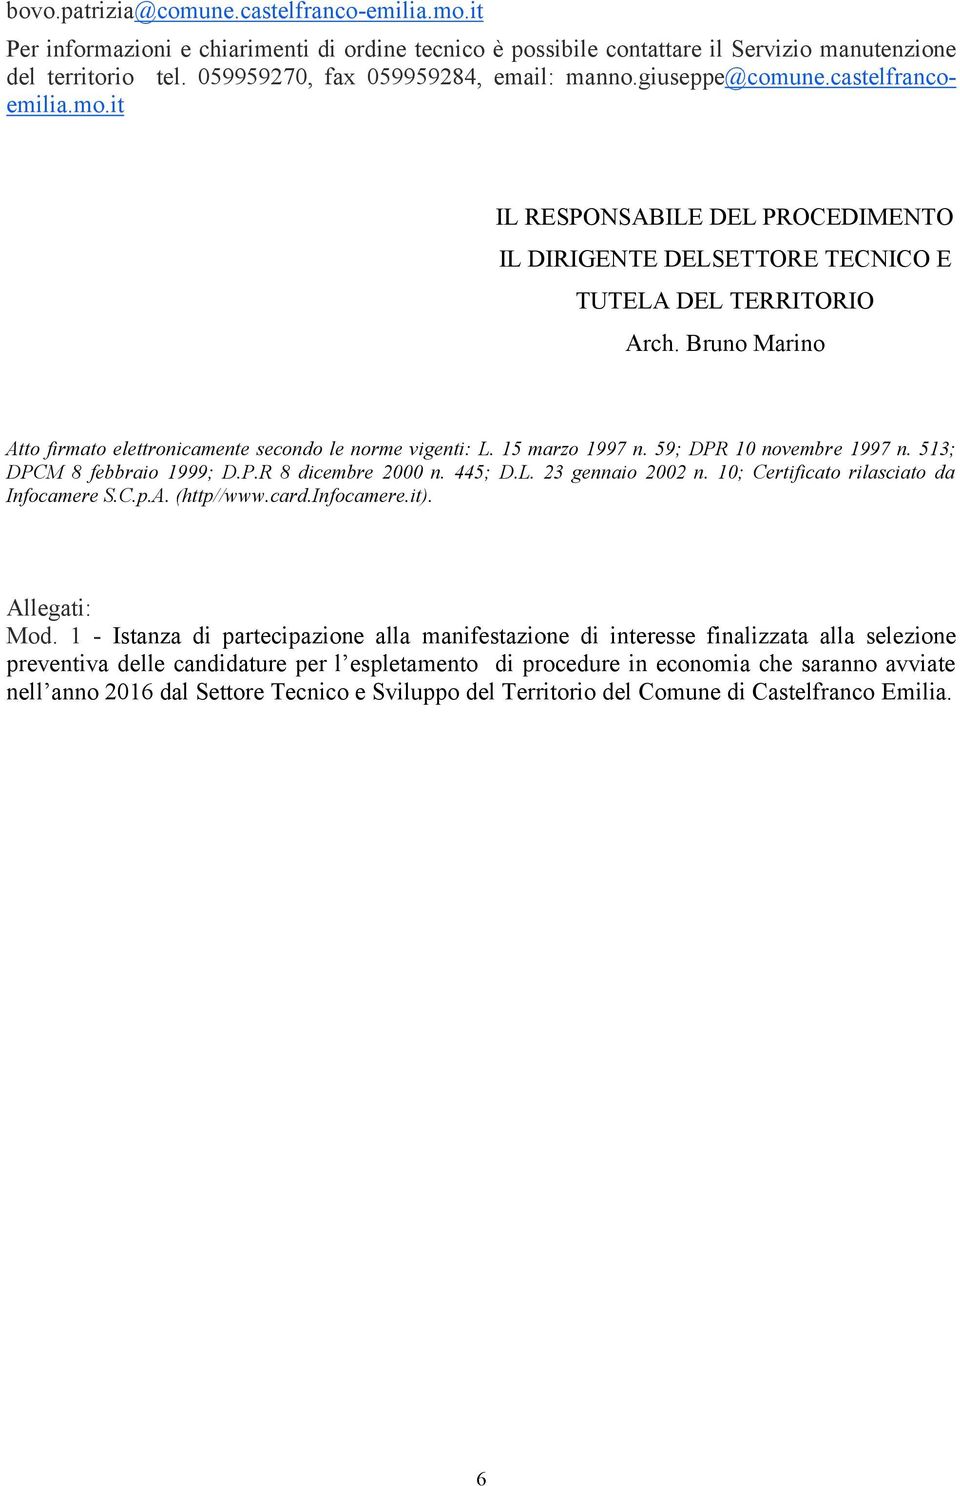 Bruno Marino Atto firmato elettronicamente secondo le norme vigenti: L. 15 marzo 1997 n. 59; DPR 10 novembre 1997 n. 513; DPCM 8 febbraio 1999; D.P.R 8 dicembre 2000 n. 445; D.L. 23 gennaio 2002 n.